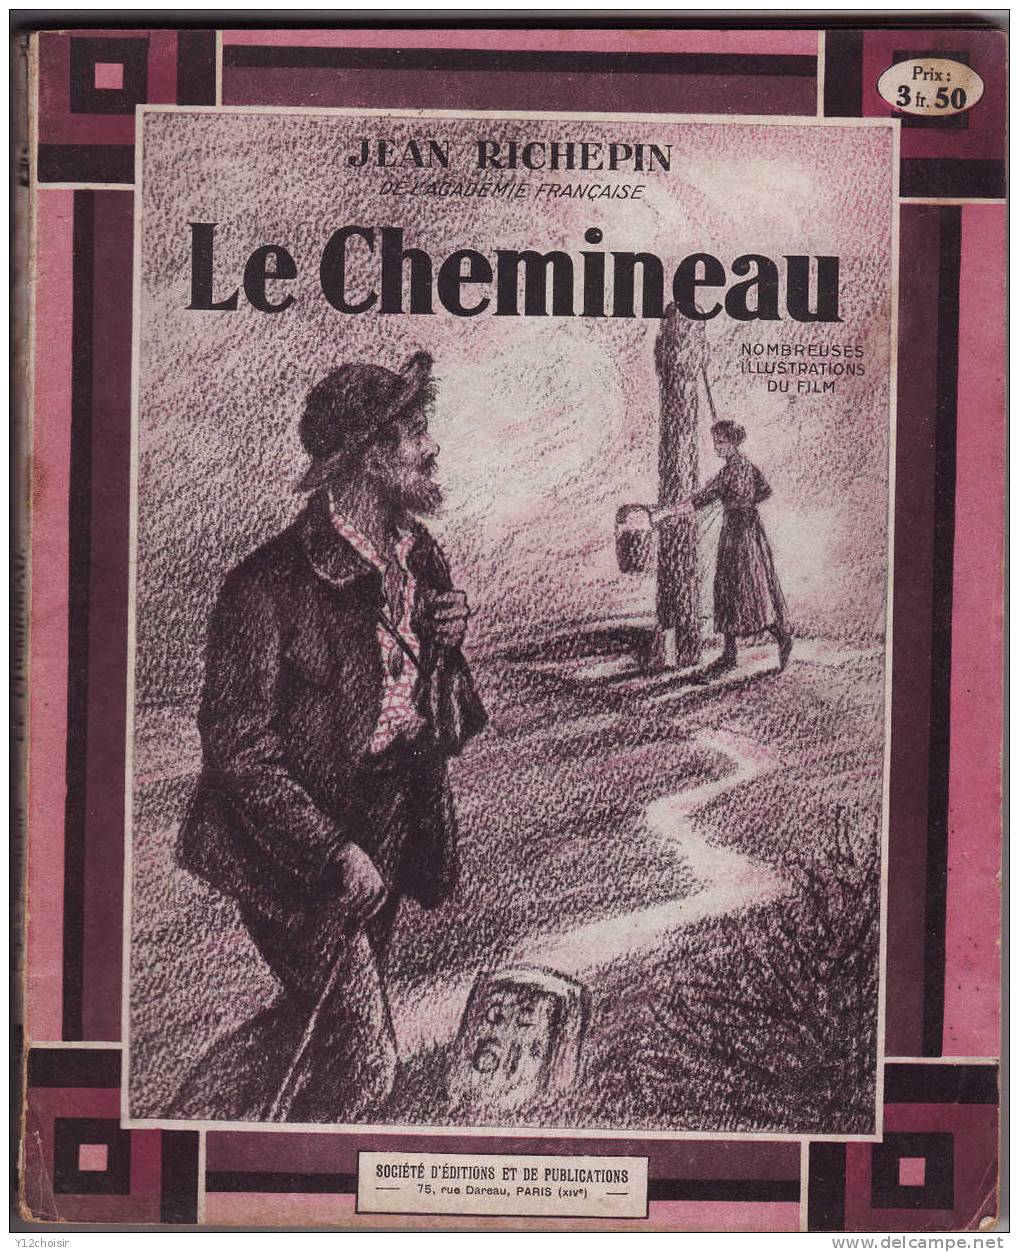 LE CHEMINEAU 1927 DE JEAN RICHEPIN ACADEMIE FRANCAISE NOMBREUSES ILLUSTRATIONS DU FILM 5 ACTES EN VERS THEATRE - Französische Autoren